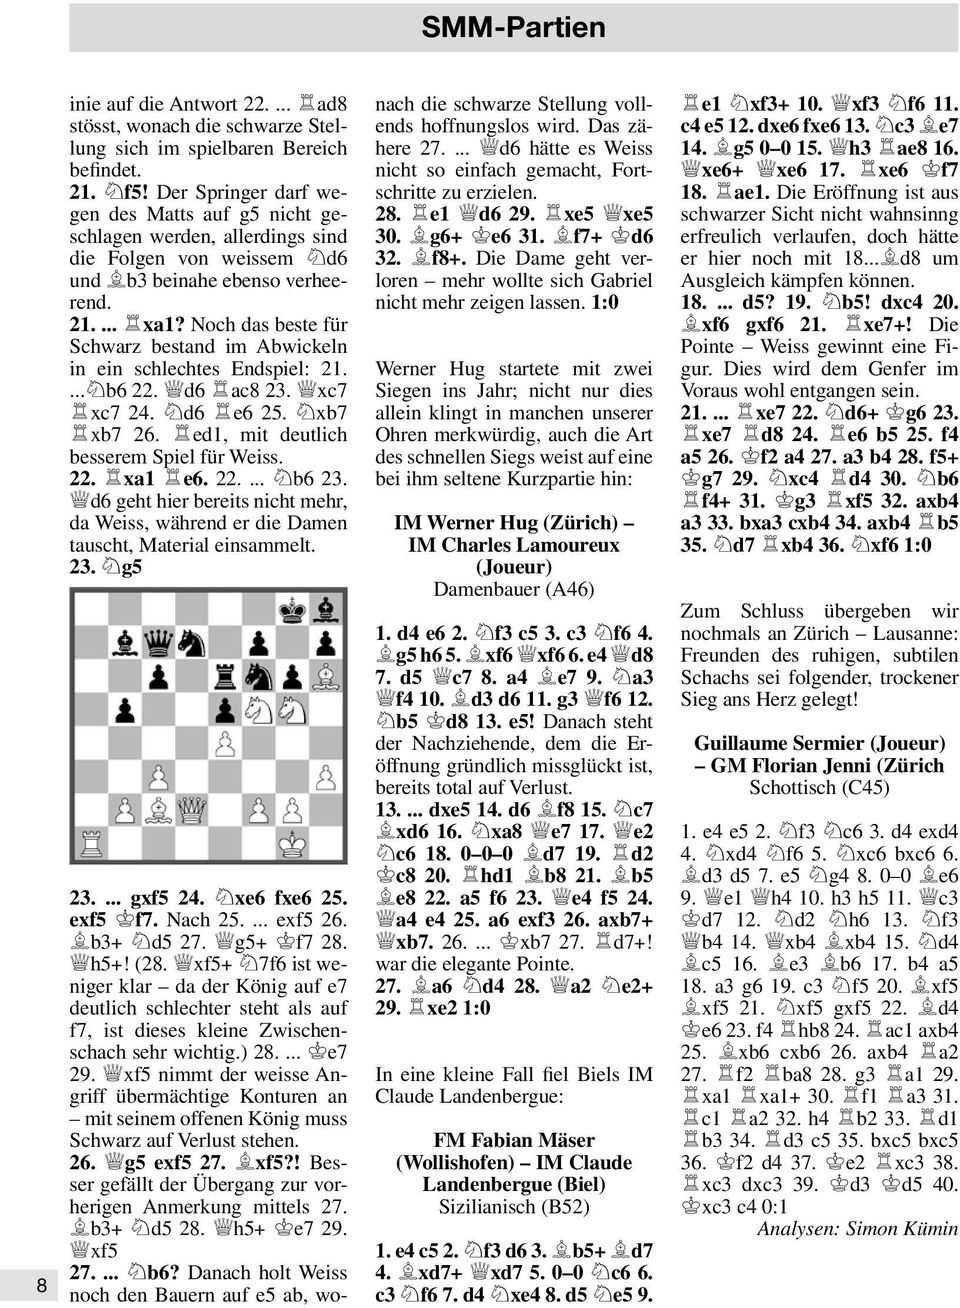 Noch das beste für Schwarz bestand im Abwickeln in ein schlechtes Endspiel: 21....Hb6 22. Kd6 Jac8 23. Kxc7 Jxc7 24. Hd6 Je6 25. Hxb7 Jxb7 26. Jed1, mit deutlich besserem Spiel für Weiss. 22. Jxa1 Je6.